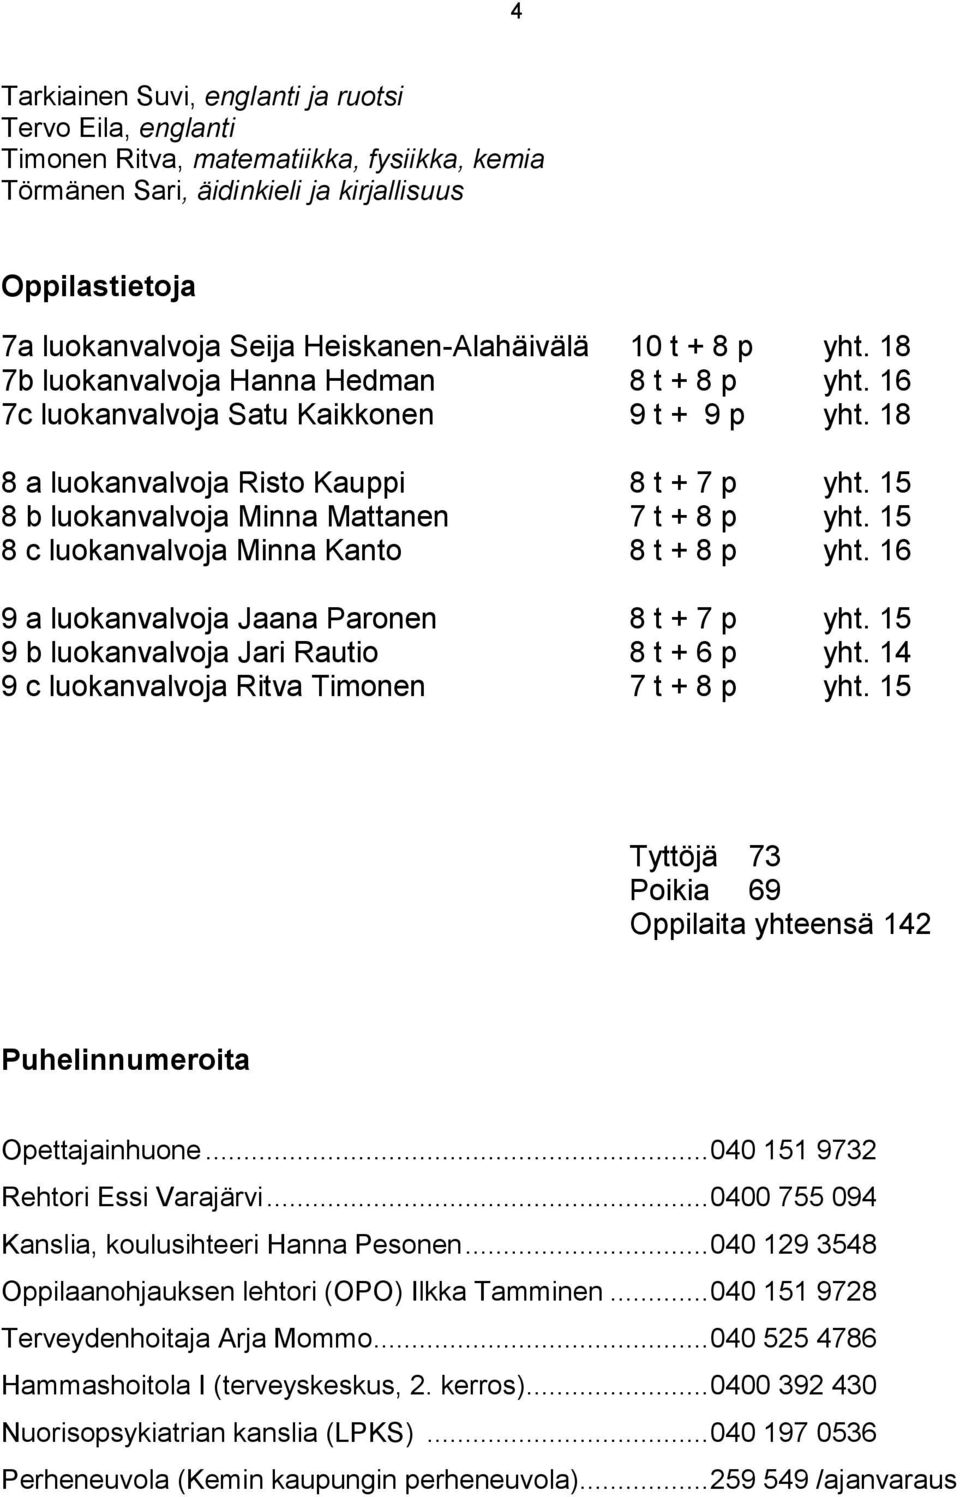 15 8 b luokanvalvoja Minna Mattanen 7 t + 8 p yht. 15 8 c luokanvalvoja Minna Kanto 8 t + 8 p yht. 16 9 a luokanvalvoja Jaana Paronen 8 t + 7 p yht. 15 9 b luokanvalvoja Jari Rautio 8 t + 6 p yht.